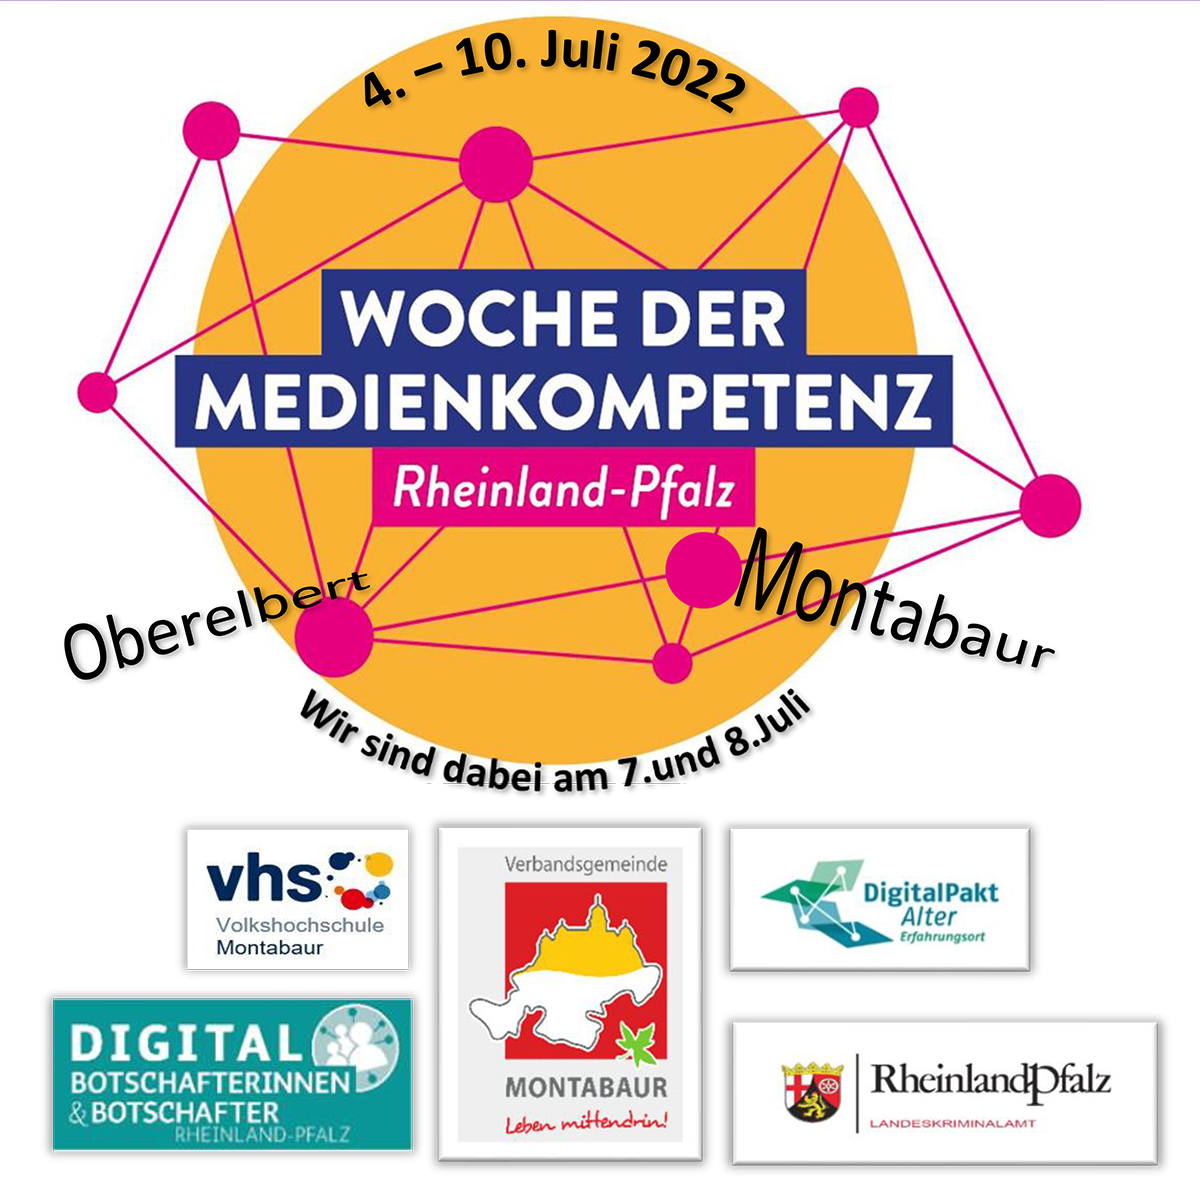 3. Woche der Medienkompetenz Rheinland-Pfalz vom 4. bis 10. Juli